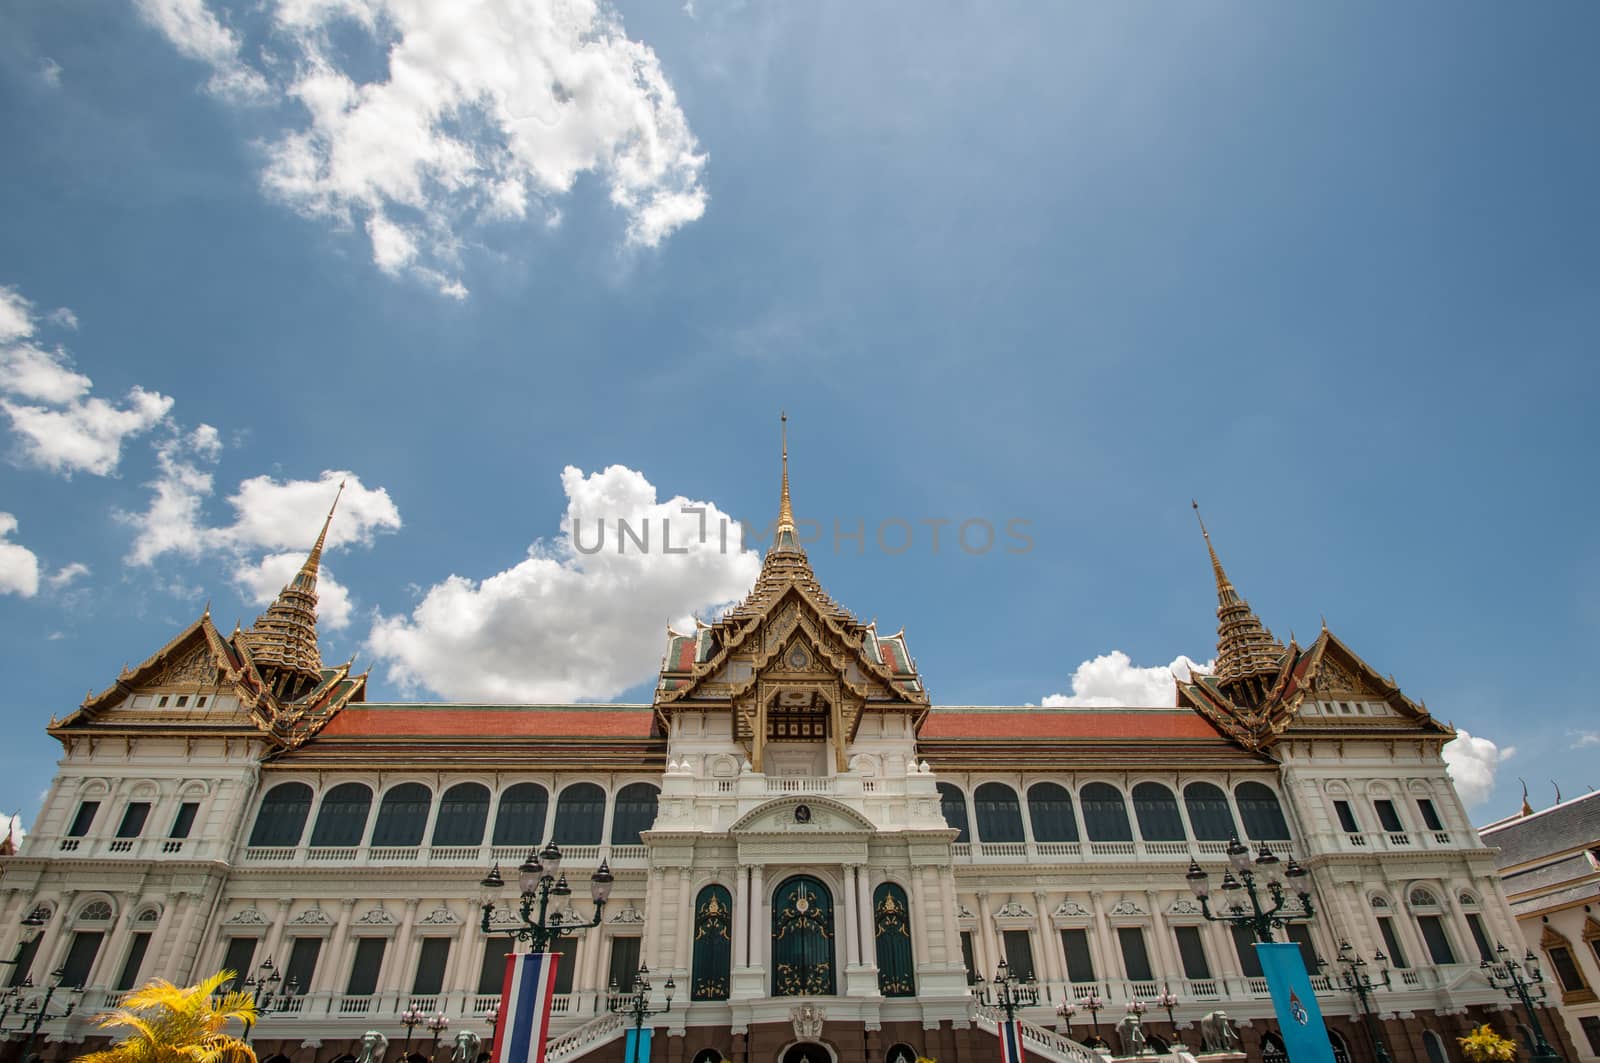 Royal grand palace in Bangkok, Thailand.